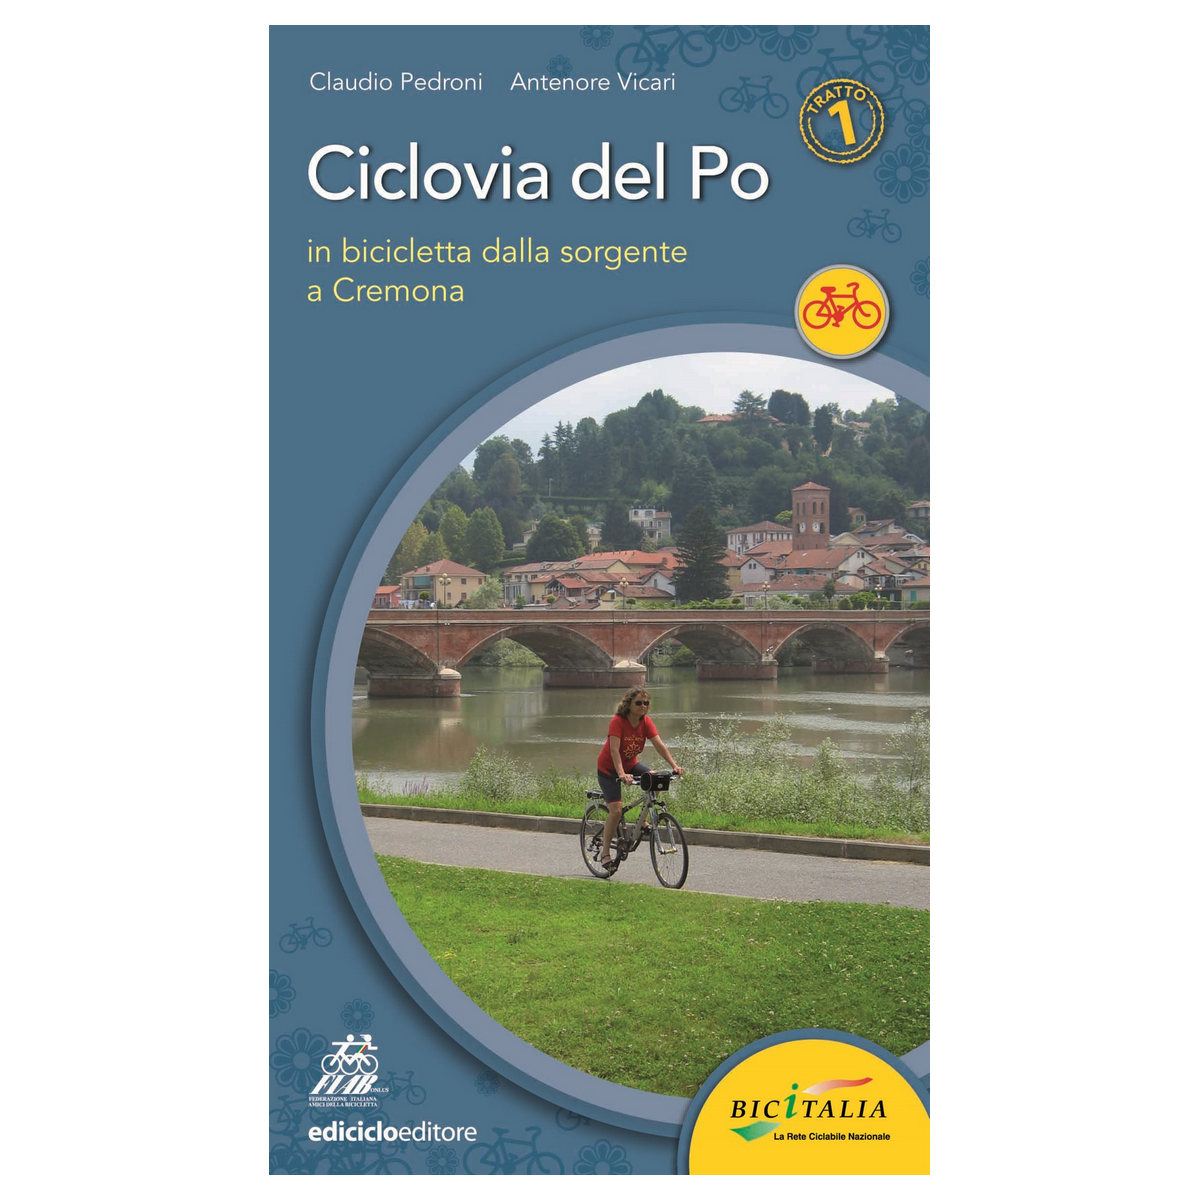 Book Ciclovia del Po tratto 1- Dalla sorgente a Cremona, Pedroni, Vicari